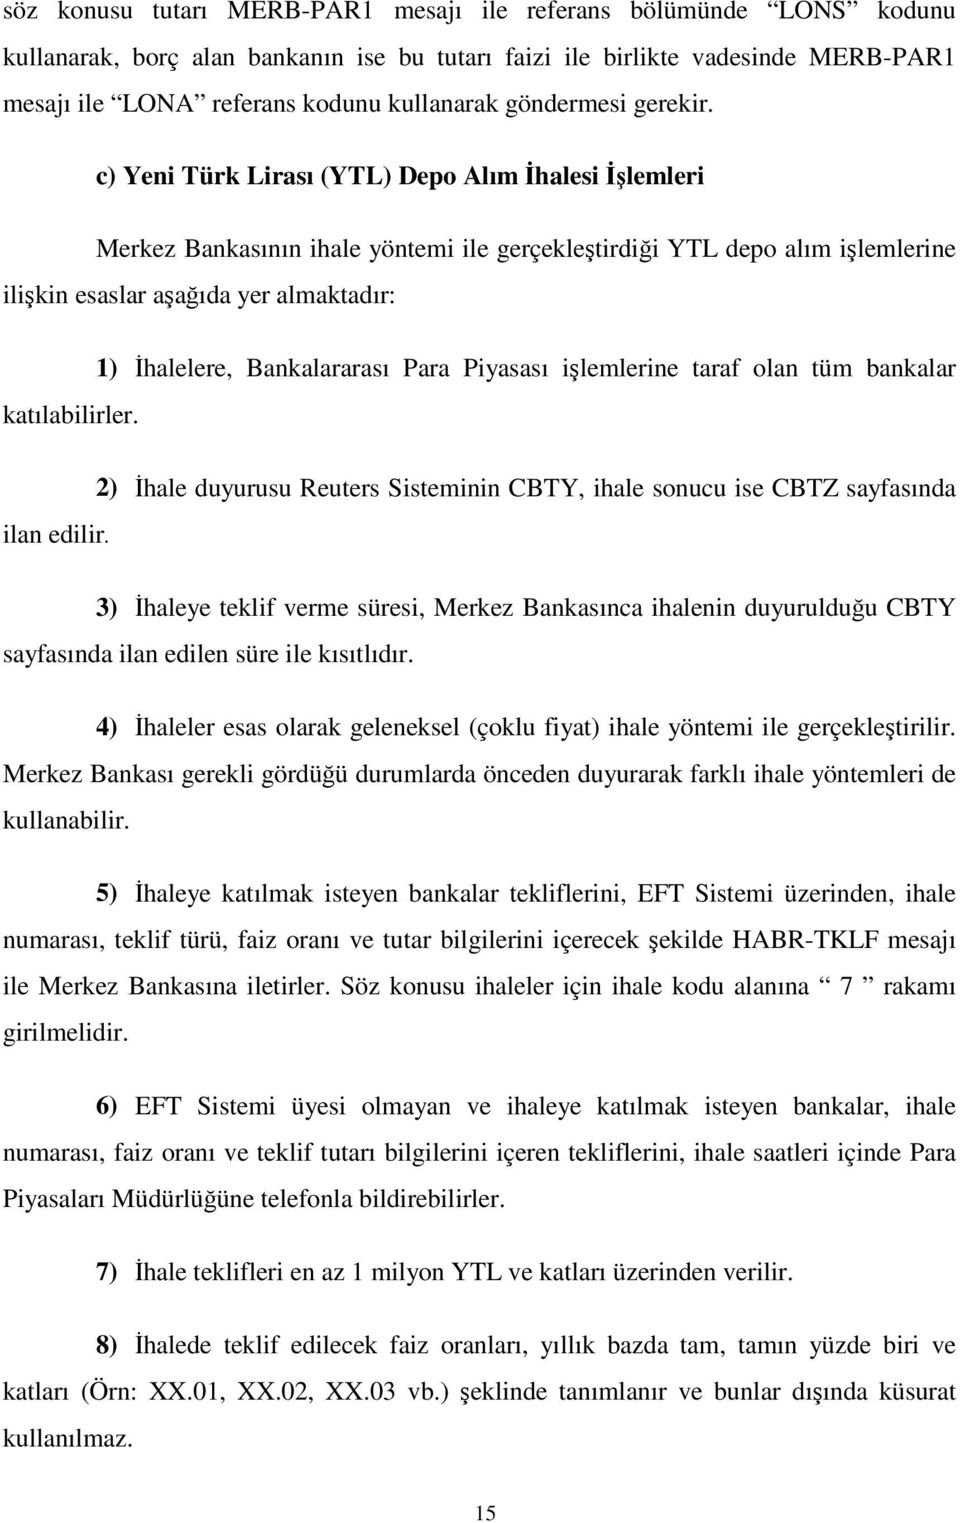 c) Yeni Türk Lirası (YTL) Depo Alım halesi lemleri Merkez Bankasının ihale yöntemi ile gerçekletirdii YTL depo alım ilemlerine ilikin esaslar aaıda yer almaktadır: 1) halelere, Bankalararası Para